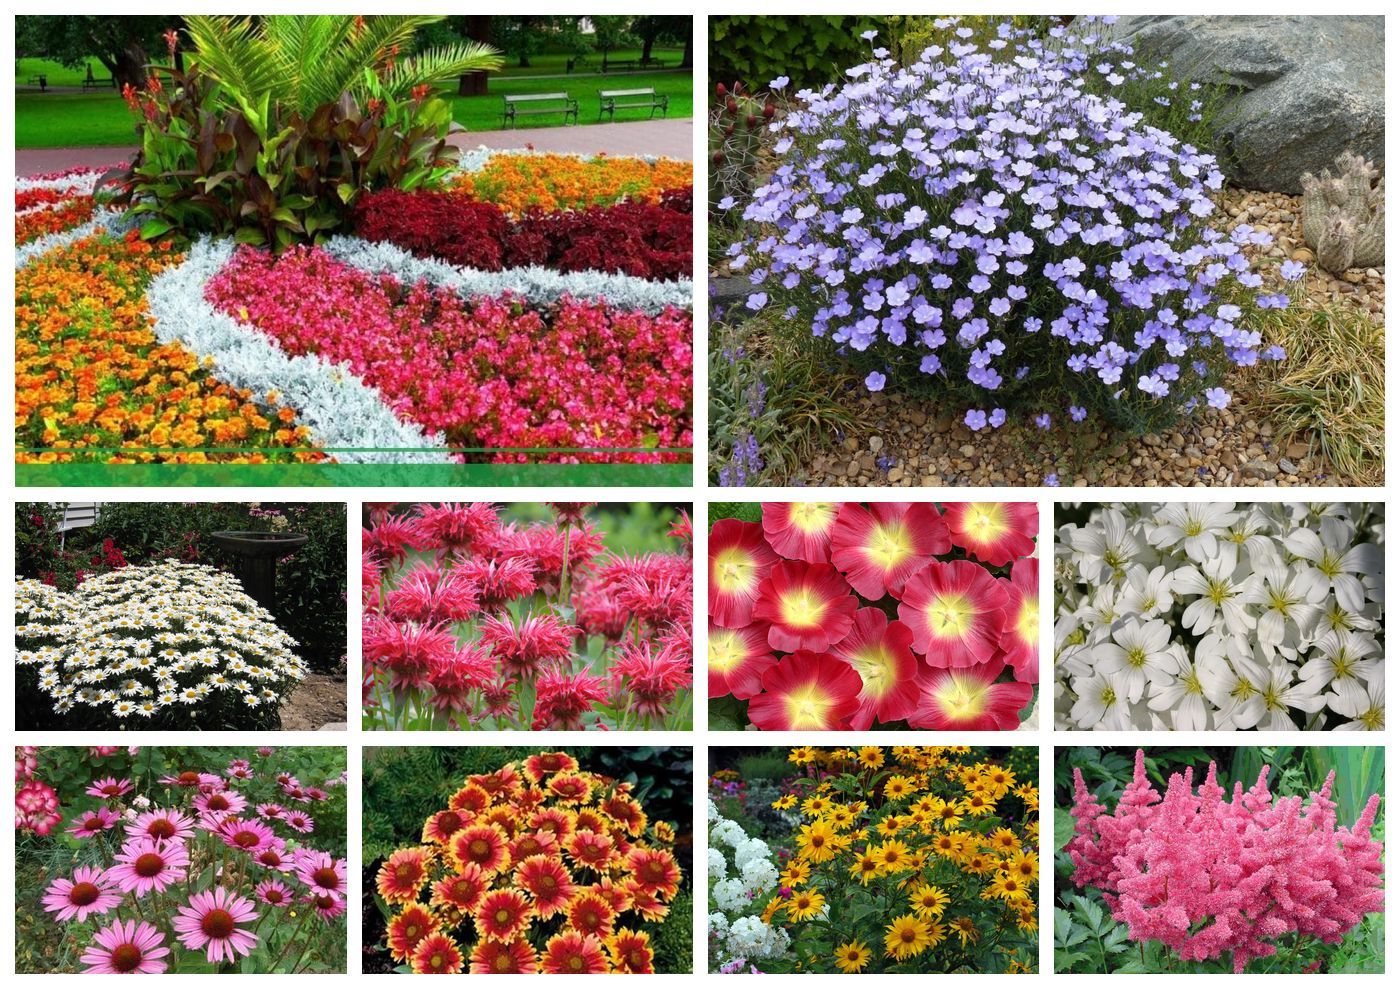 Цветы однолетники для сада неприхотливые долгоцветущие низкорослые фото и названия